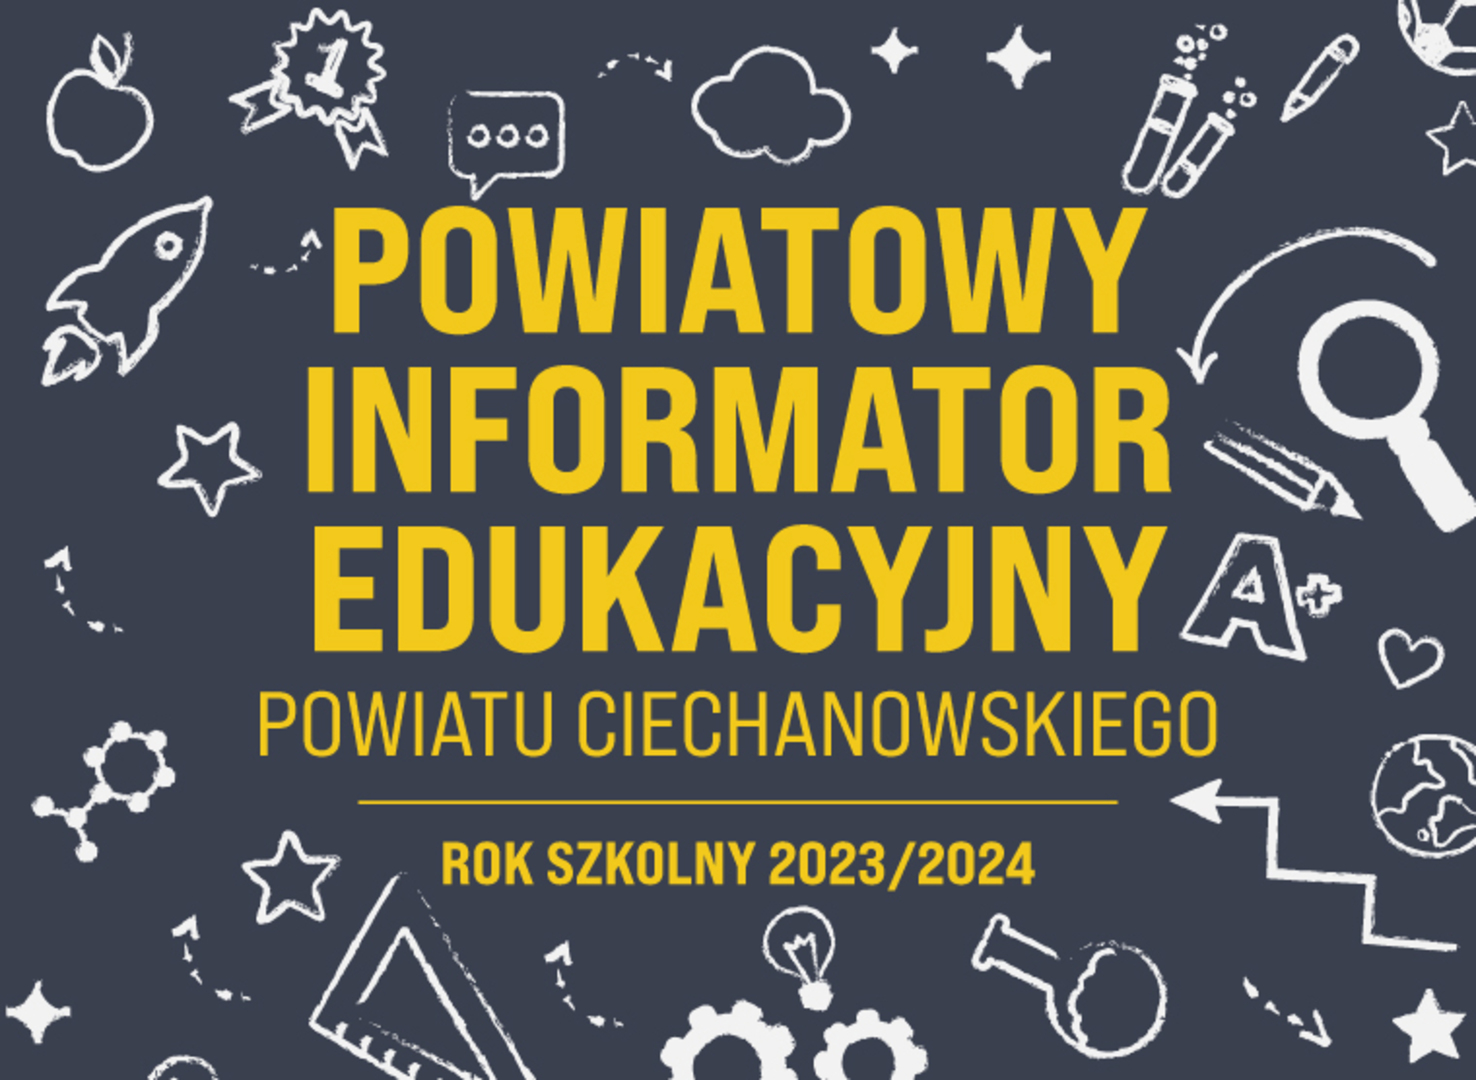 2023-04-11-Powiatowy-informator-edukacyjny-www-v1.jpg